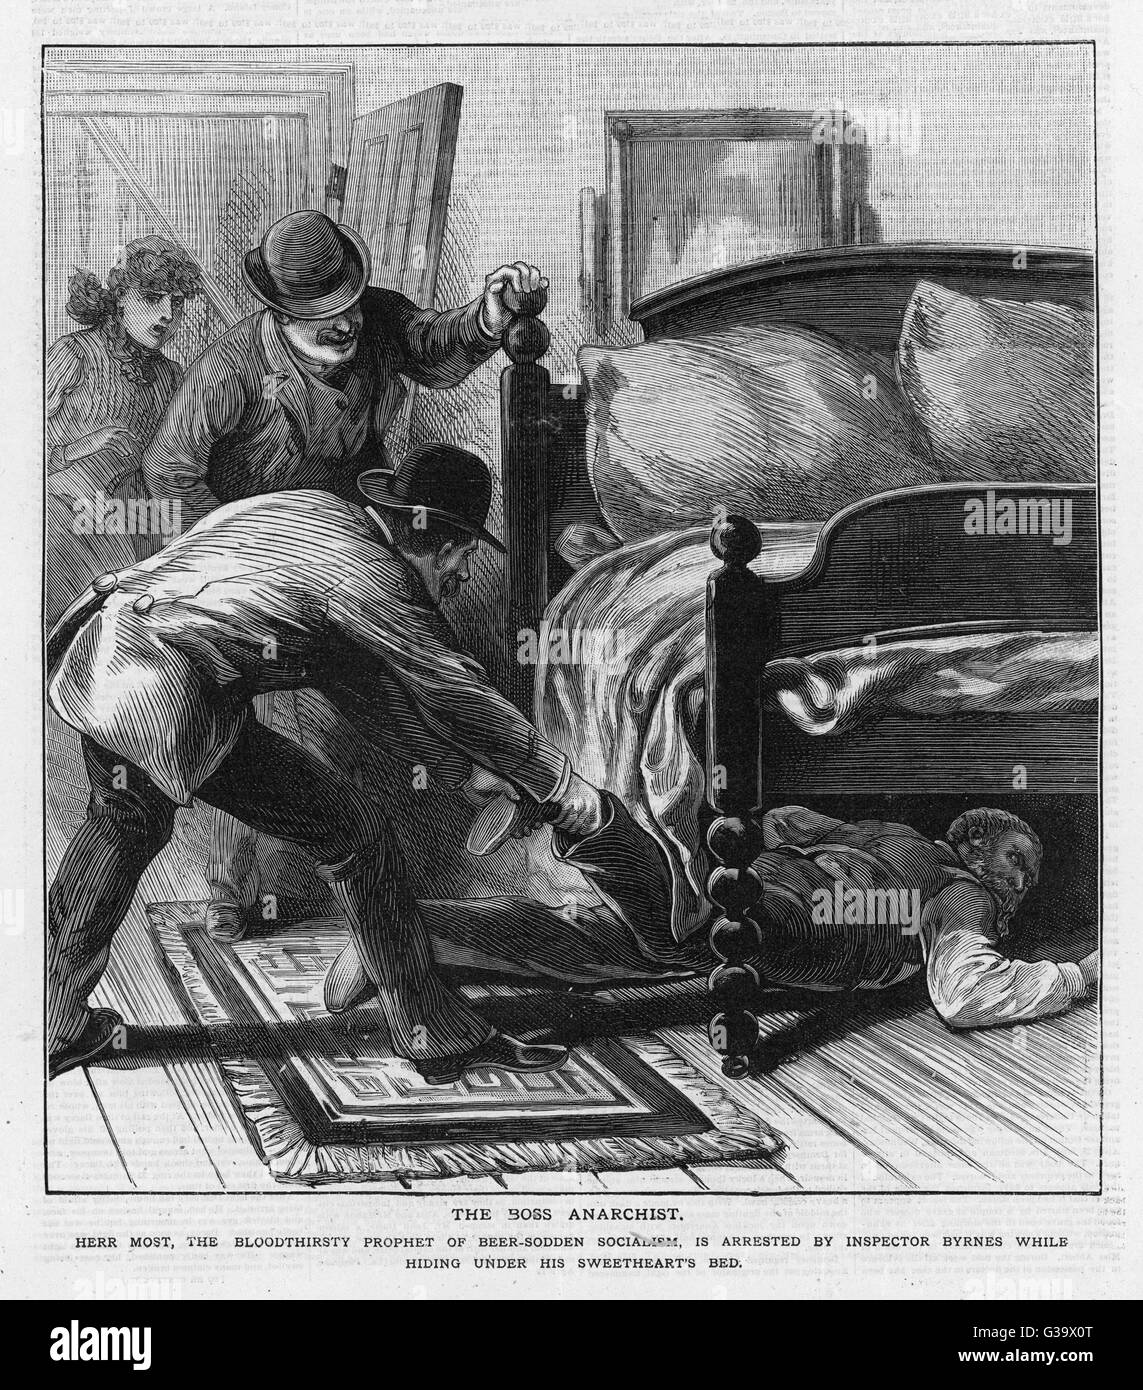 Die einflussreichen anarchistischen Führer, Johann Most, wird in einem Versteck unter dem Bett entdeckt und verhaftet Datum: 1886 Stockfoto